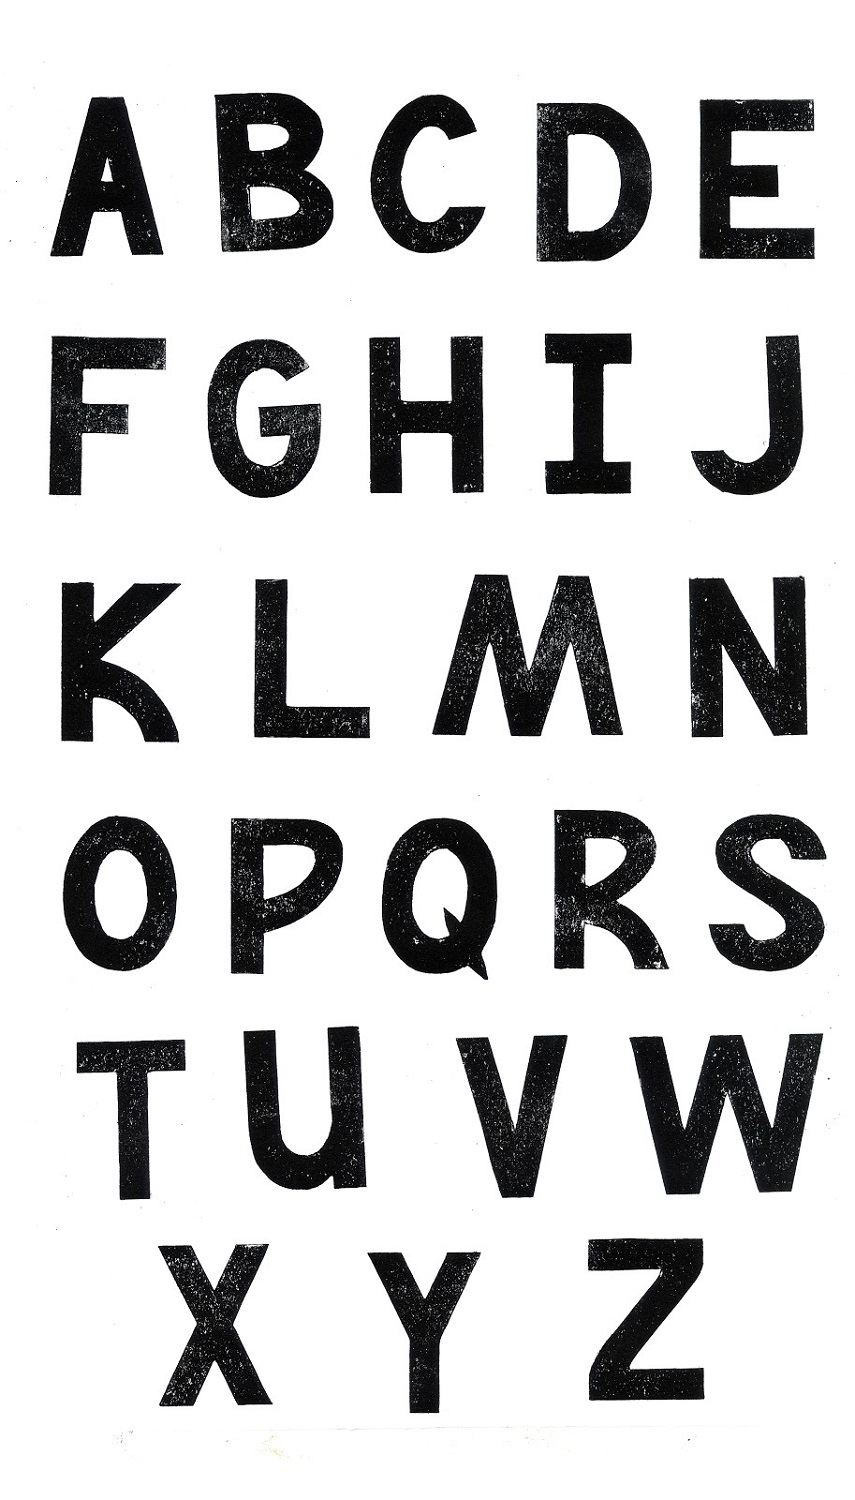 printable-alphabet-capital-letters-template-for-applique-pdf-letter